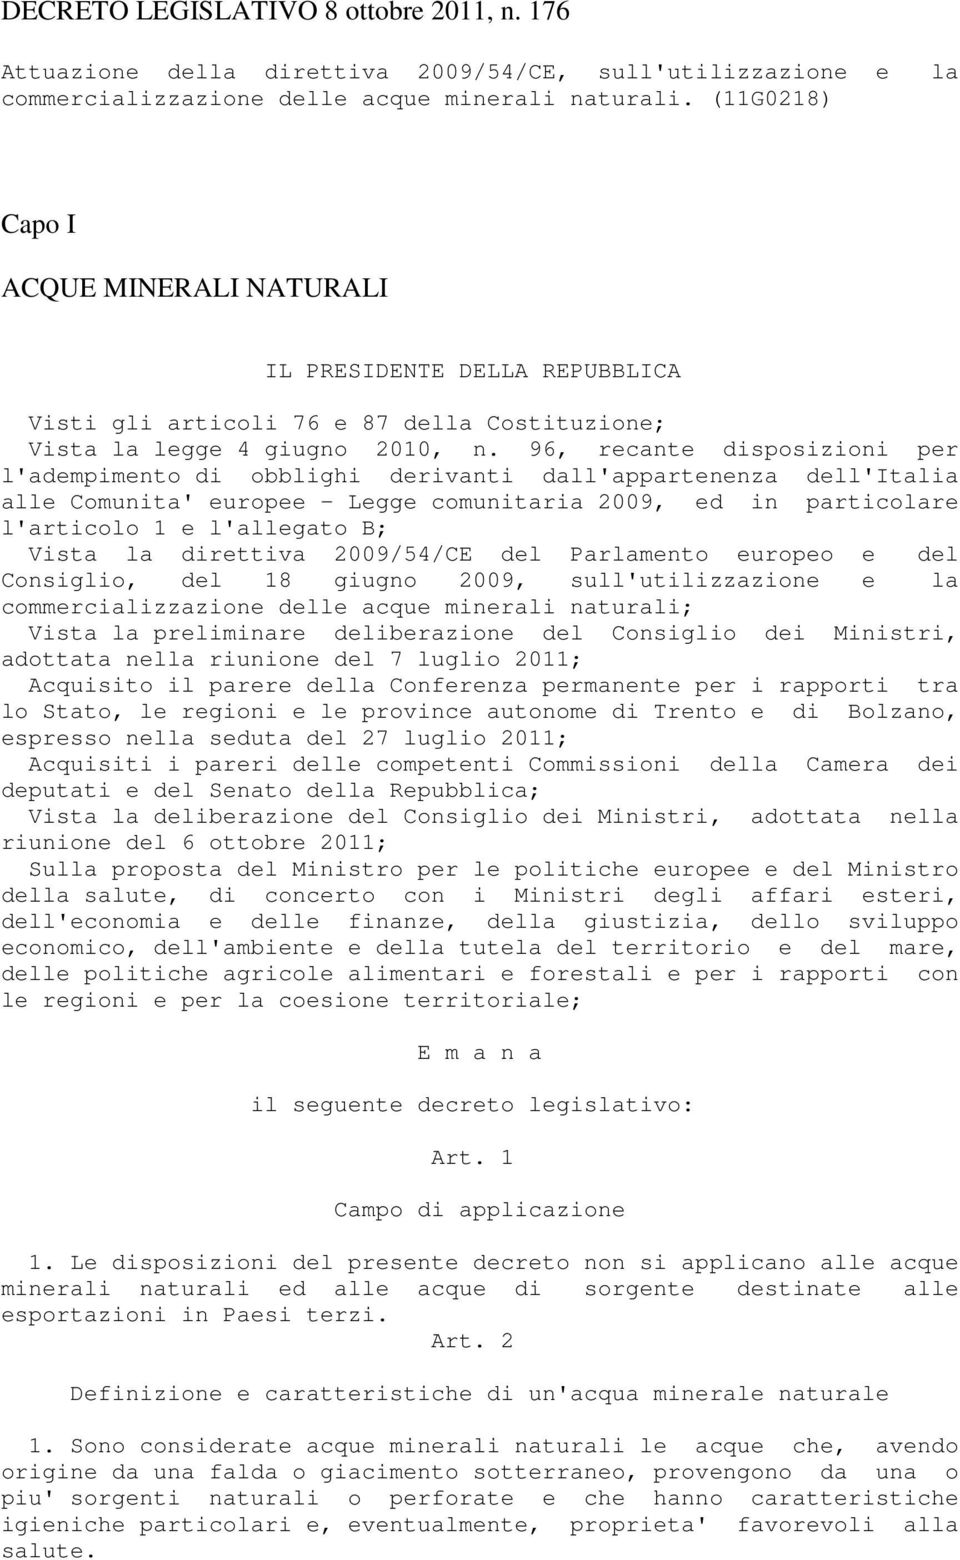 96, recante disposizioni per l'adempimento di obblighi derivanti dall'appartenenza dell'italia alle Comunita' europee - Legge comunitaria 2009, ed in particolare l'articolo 1 e l'allegato B; Vista la